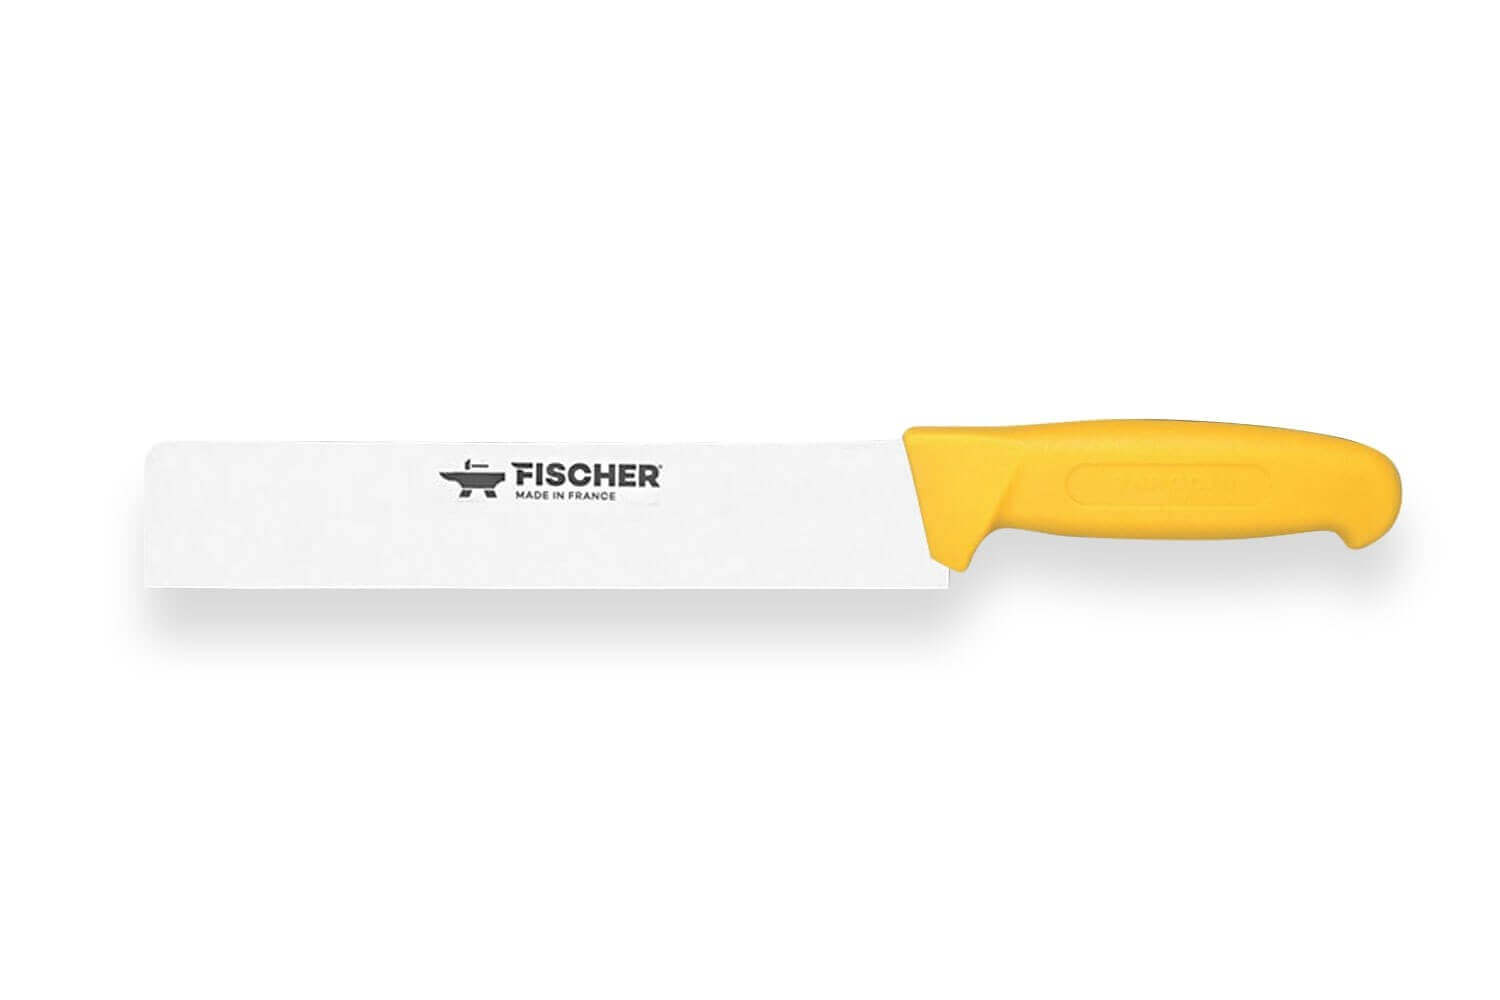 Fischer couteau fromage 50cm 2 manches - Divers coloris